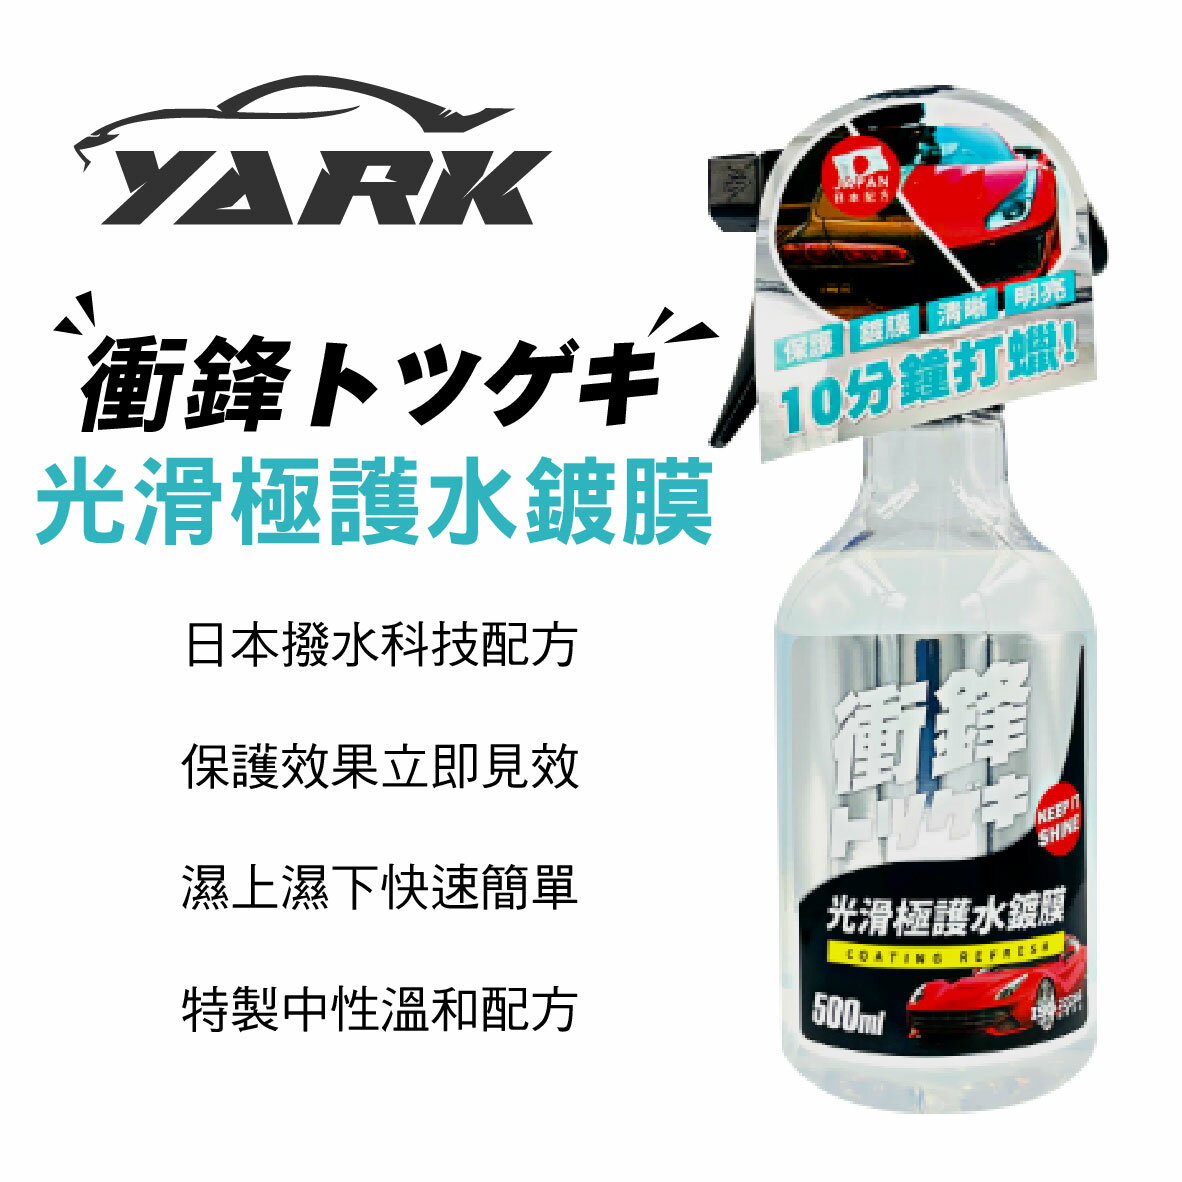 真便宜 YARK亞克 衝鋒光滑極護水鍍膜 500ML(車身、玻璃、鏡面皆可用)